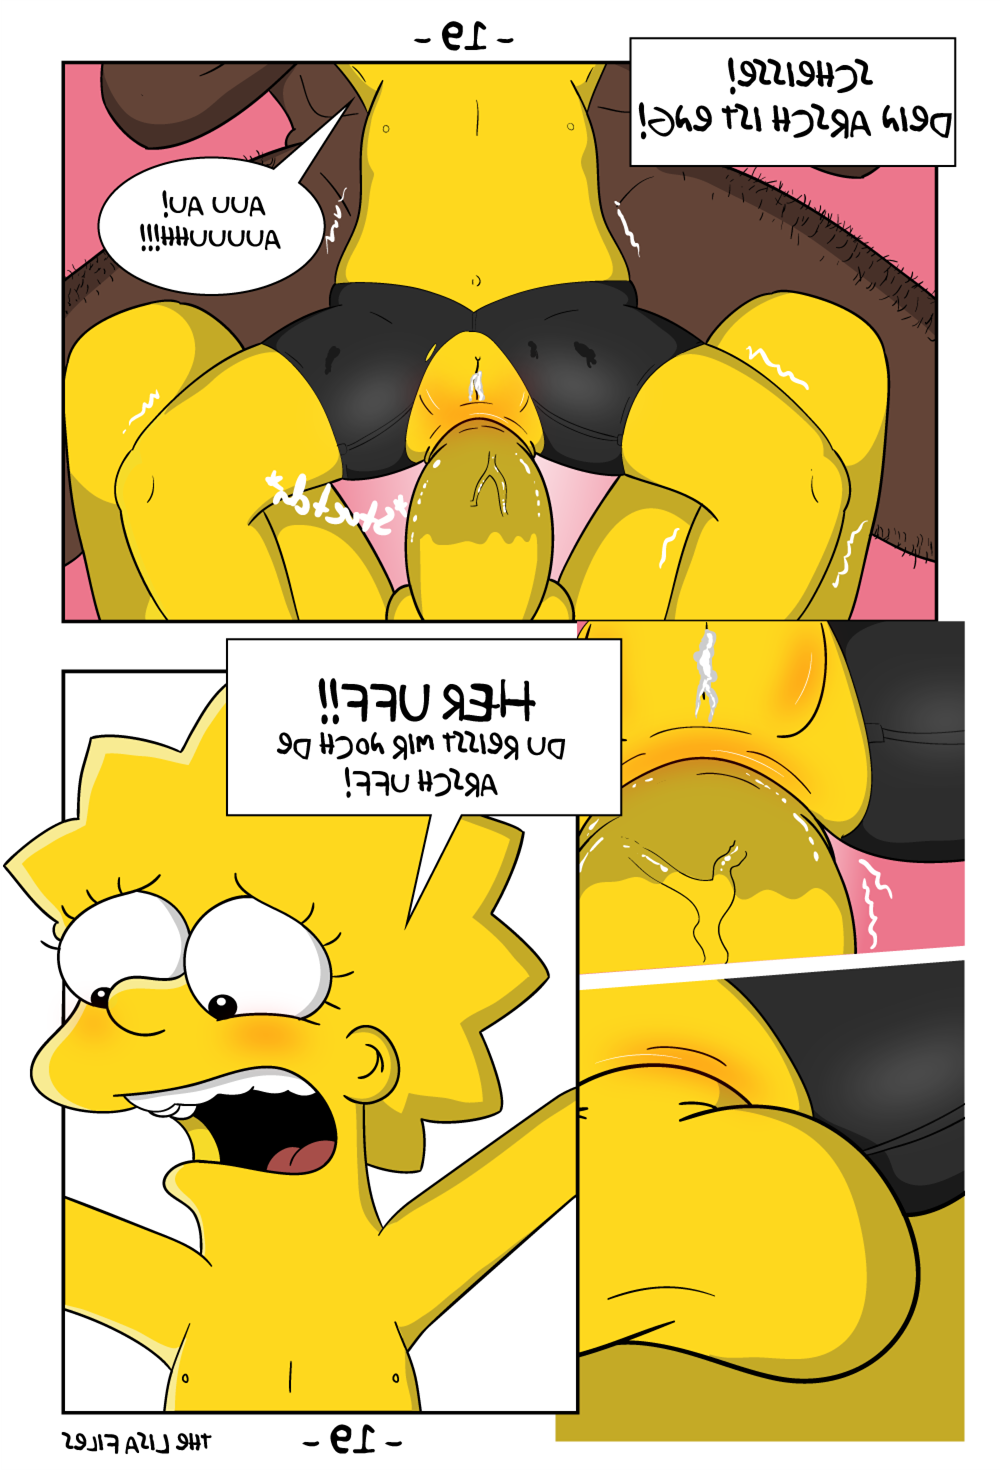 Порно комиксы лизы симпсонов фото 18